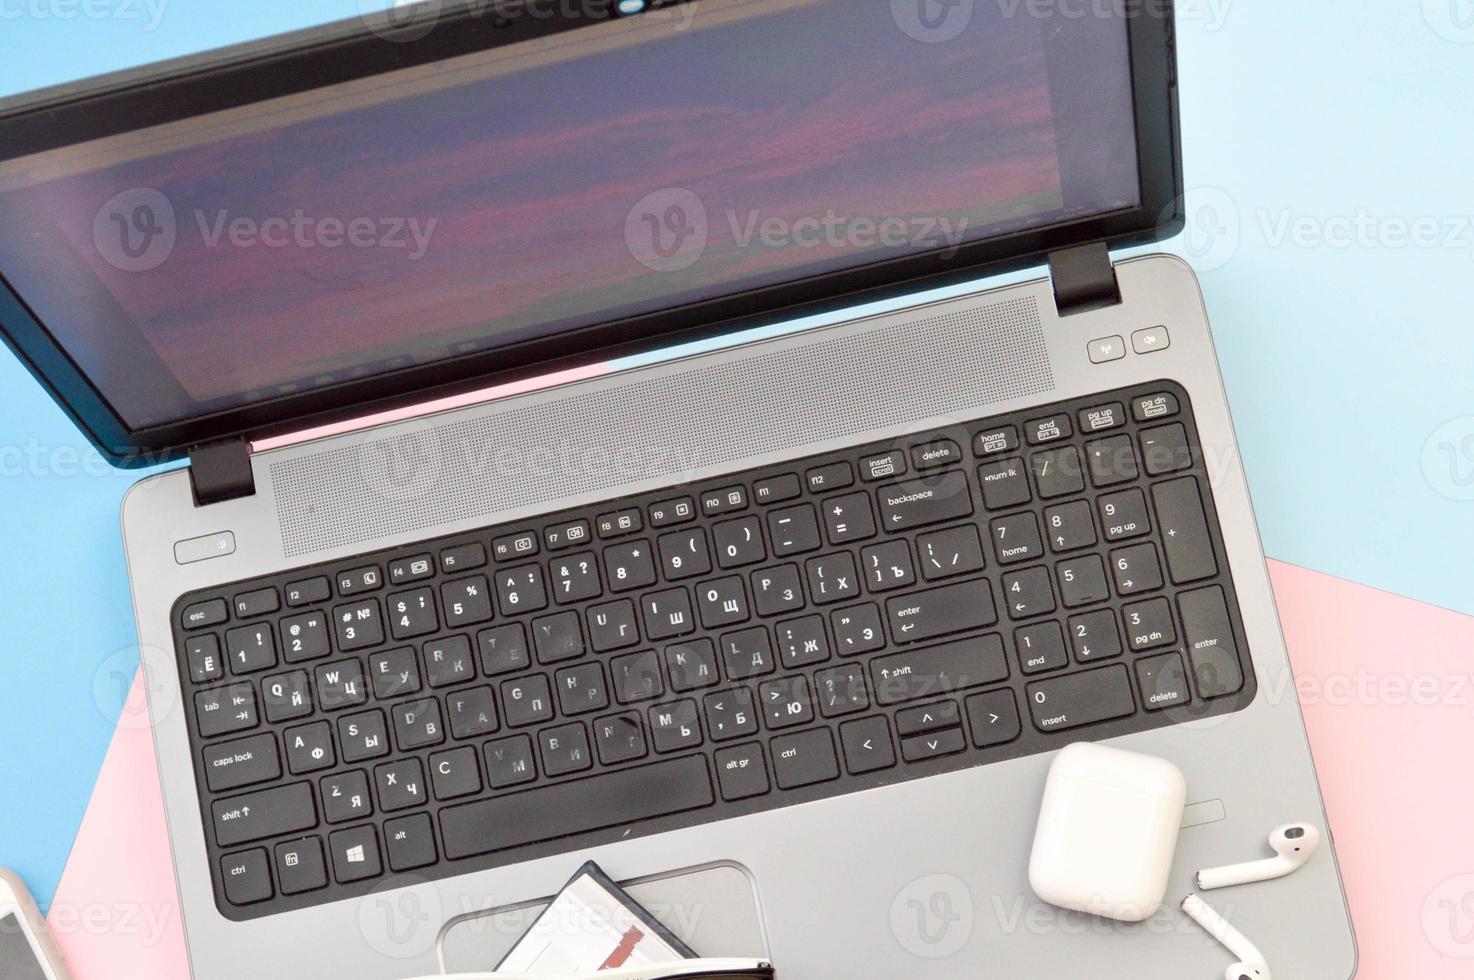 Arbeitsplatz zu Hause, Heimbüro für Fernarbeit mit einem Computer Laptop Handy Smartphone Notizblock Stift Kopfhörer und Brille auf rosa und blauem Hintergrund foto